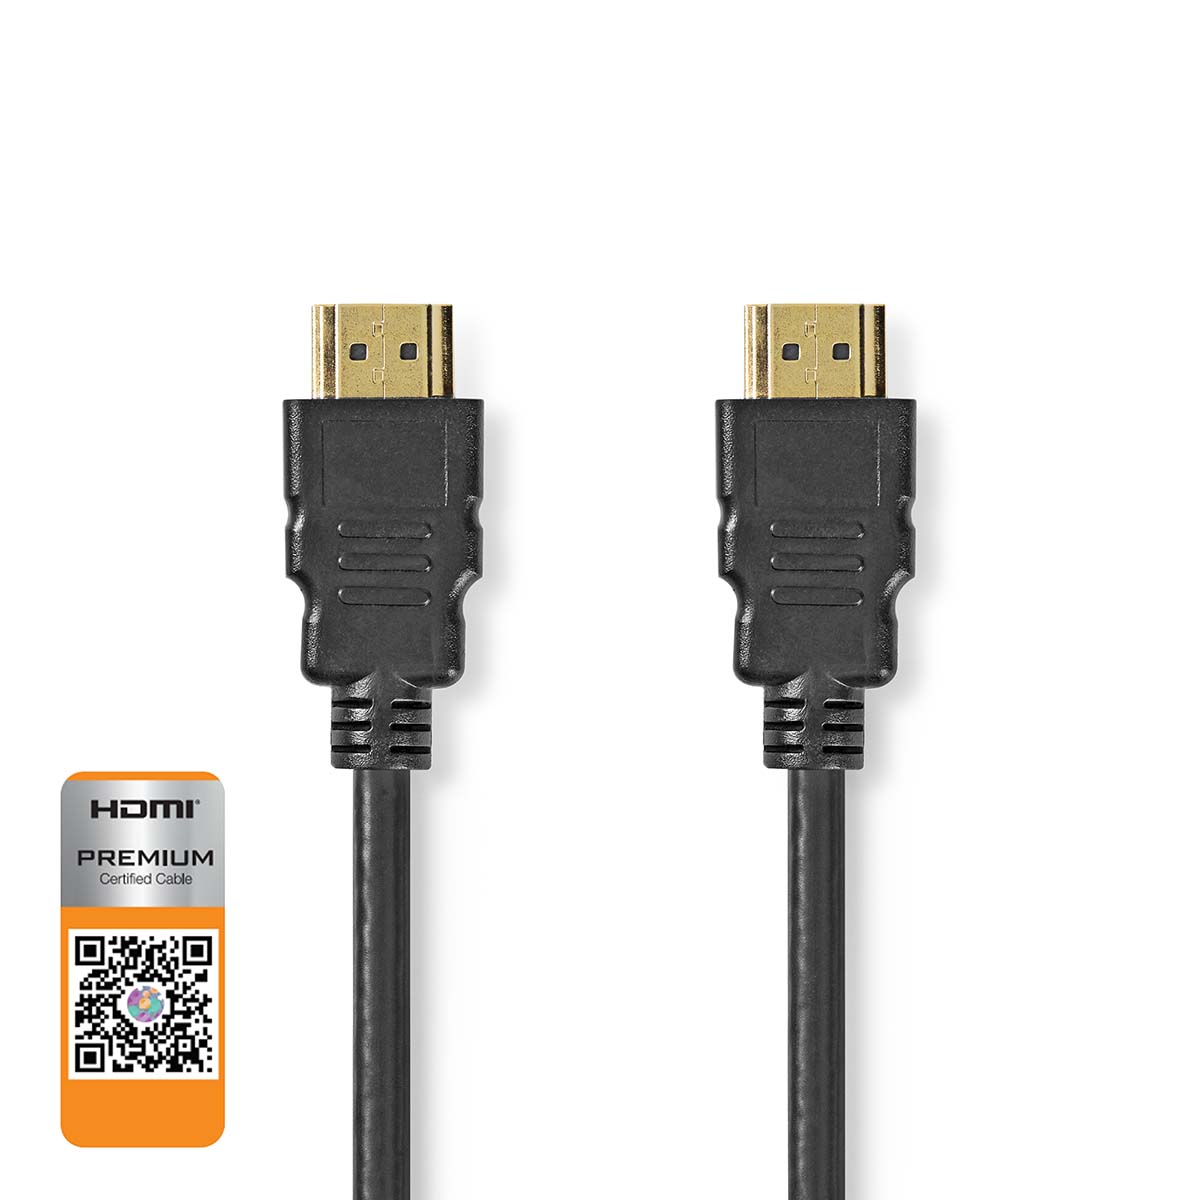 Nedis prémiový High Speed HDMI 2.0b kabel s ethernetem, 4K až 18 GB/s, zástrčka HDMI - zástrčka HDMI, 3 m, černá (CVGL34050BK30)